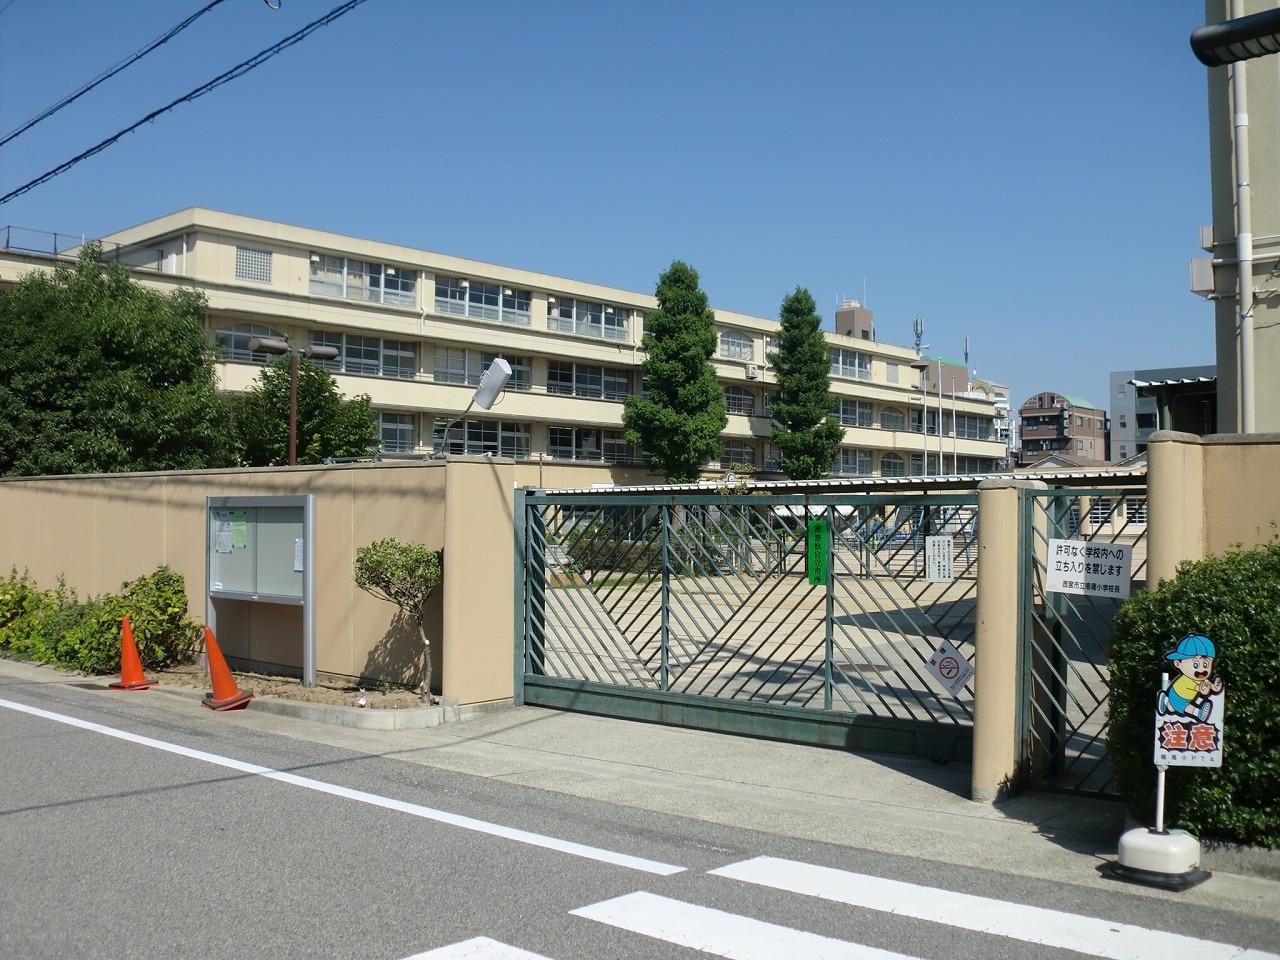 Primary school. 462m to Nishinomiya Municipal Naruo elementary school (elementary school)